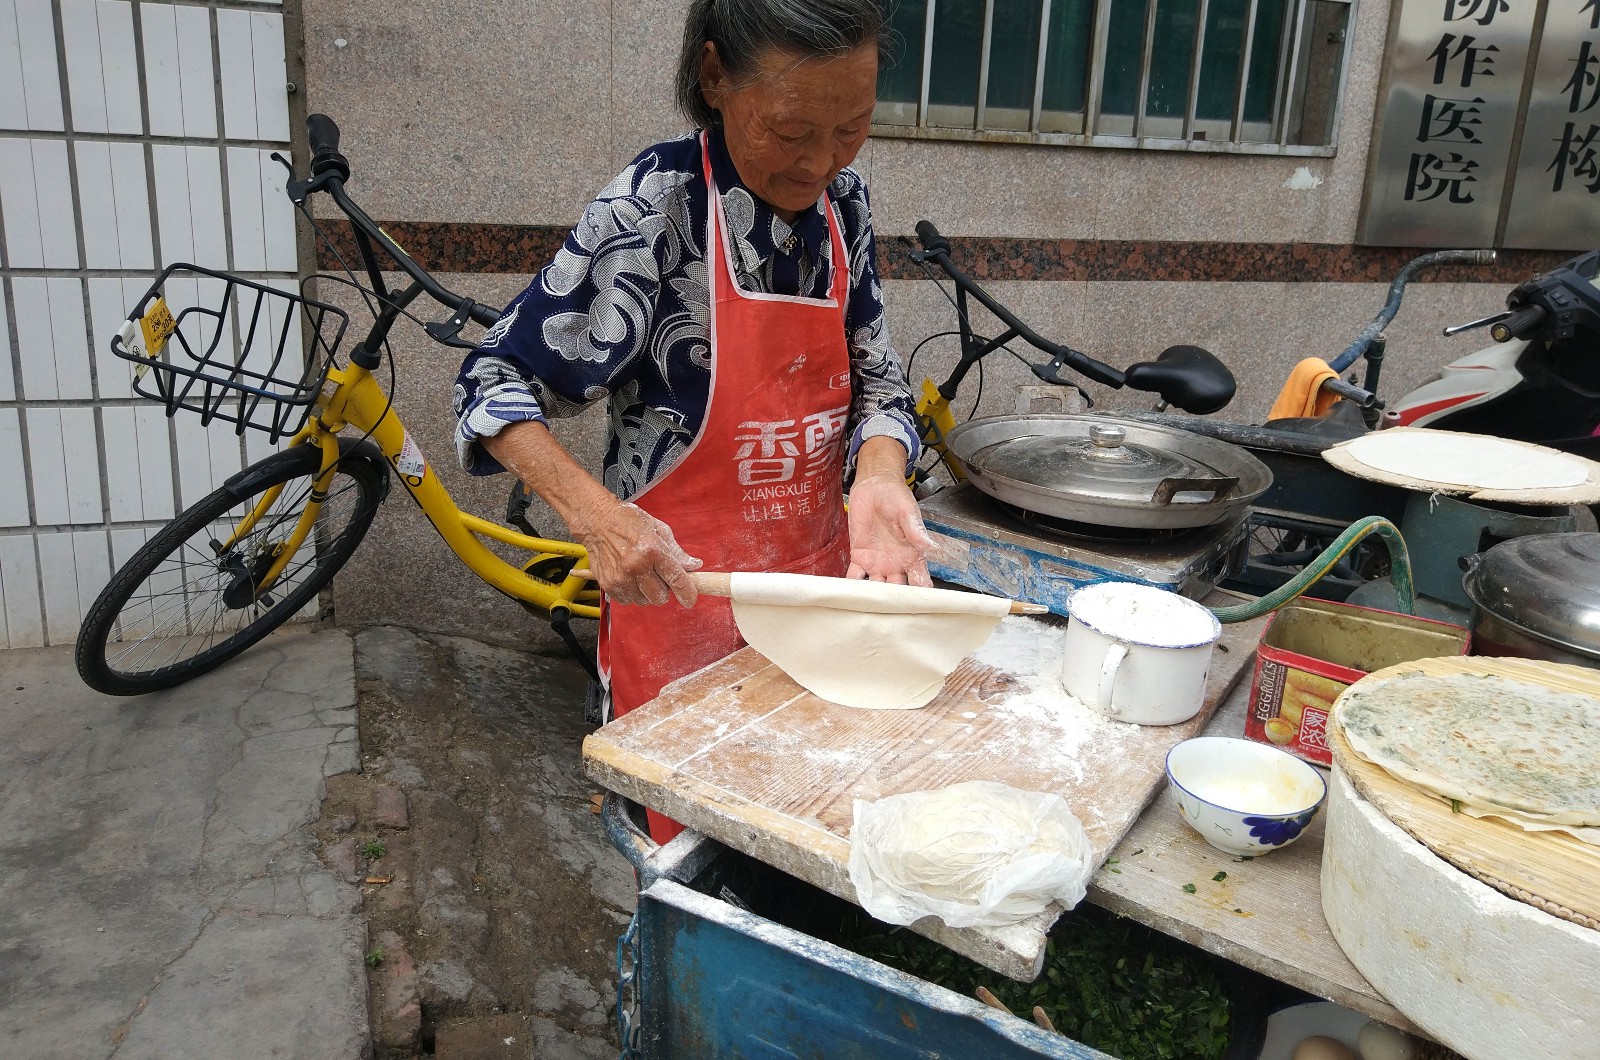 84岁老人 每天街头摊菜馍满满家乡的味道!